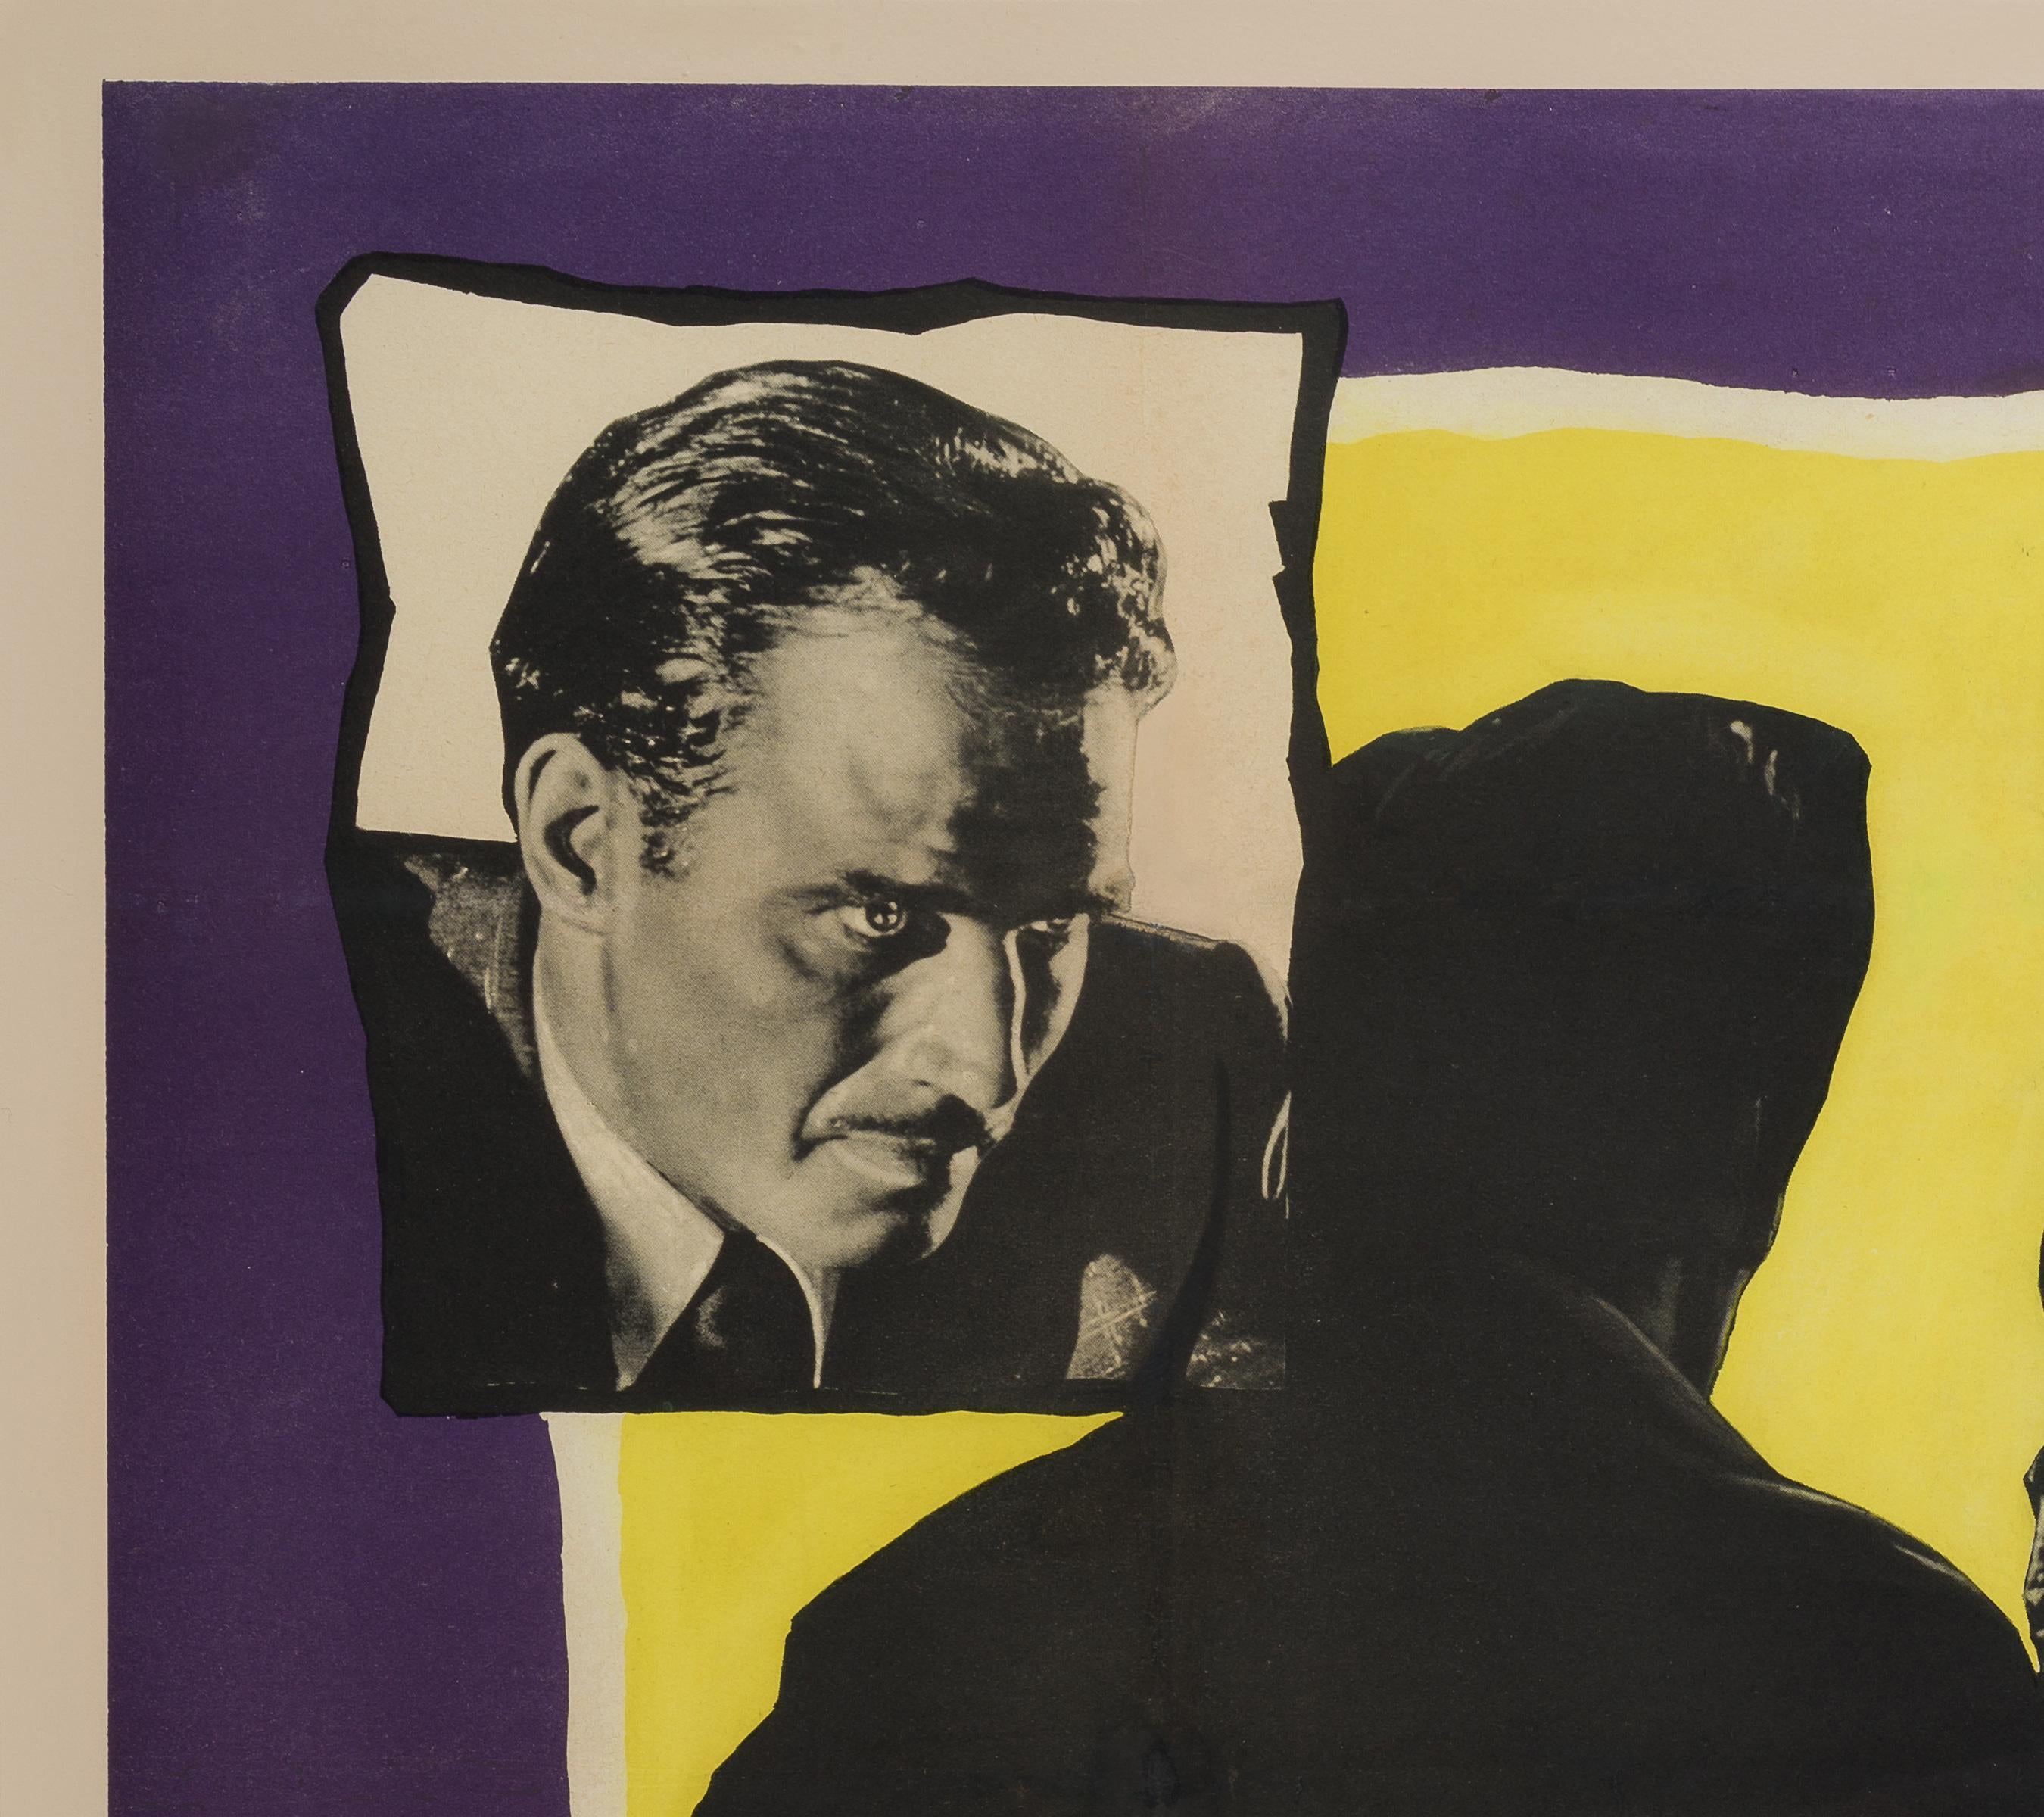 Fabelhaftes britisches Quad aus dem ersten Jahr der Veröffentlichung von Orson Welles' Film Touch of Evil. Ein ganz besonderes, unglaublich seltenes Vintage-Filmplakat, das einzige, das wir je gesehen haben.

Tatsächliche Größe 30 x 40 Zoll (31 x